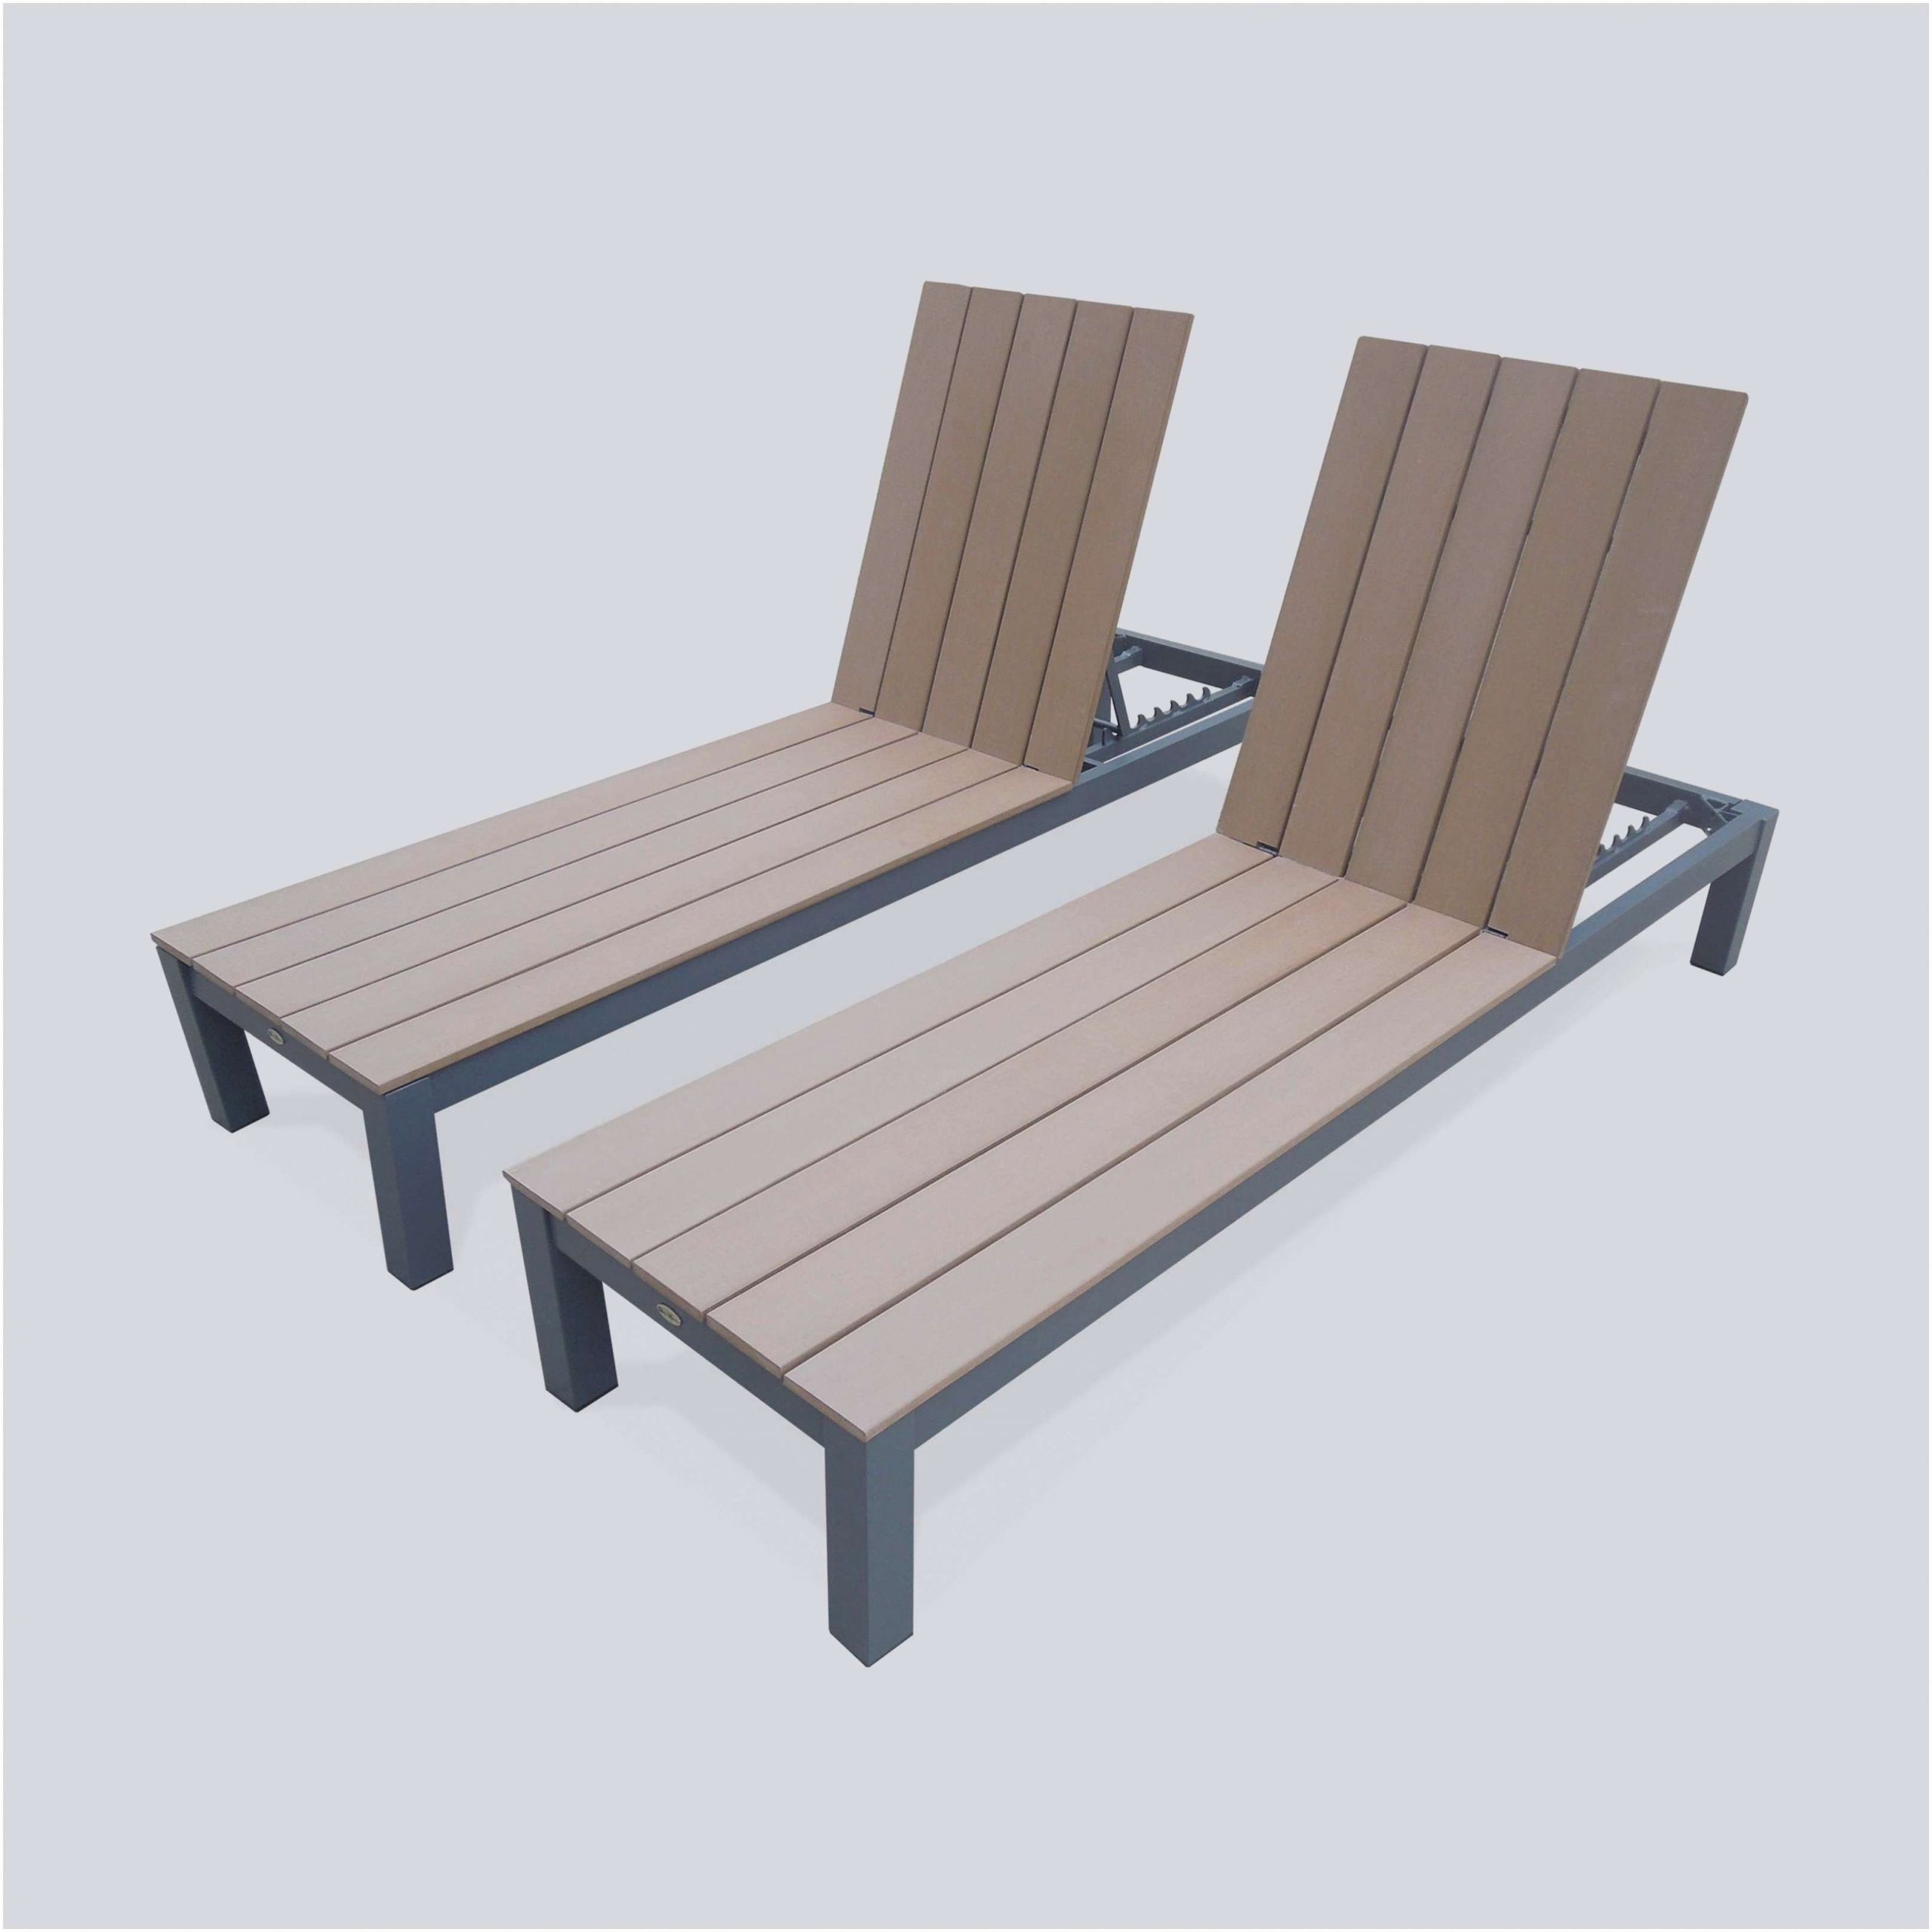 fauteuil en palette plan nouveau inspire maha de chaise longue bois mahagranda de home pour de fauteuil en palette plan scaled